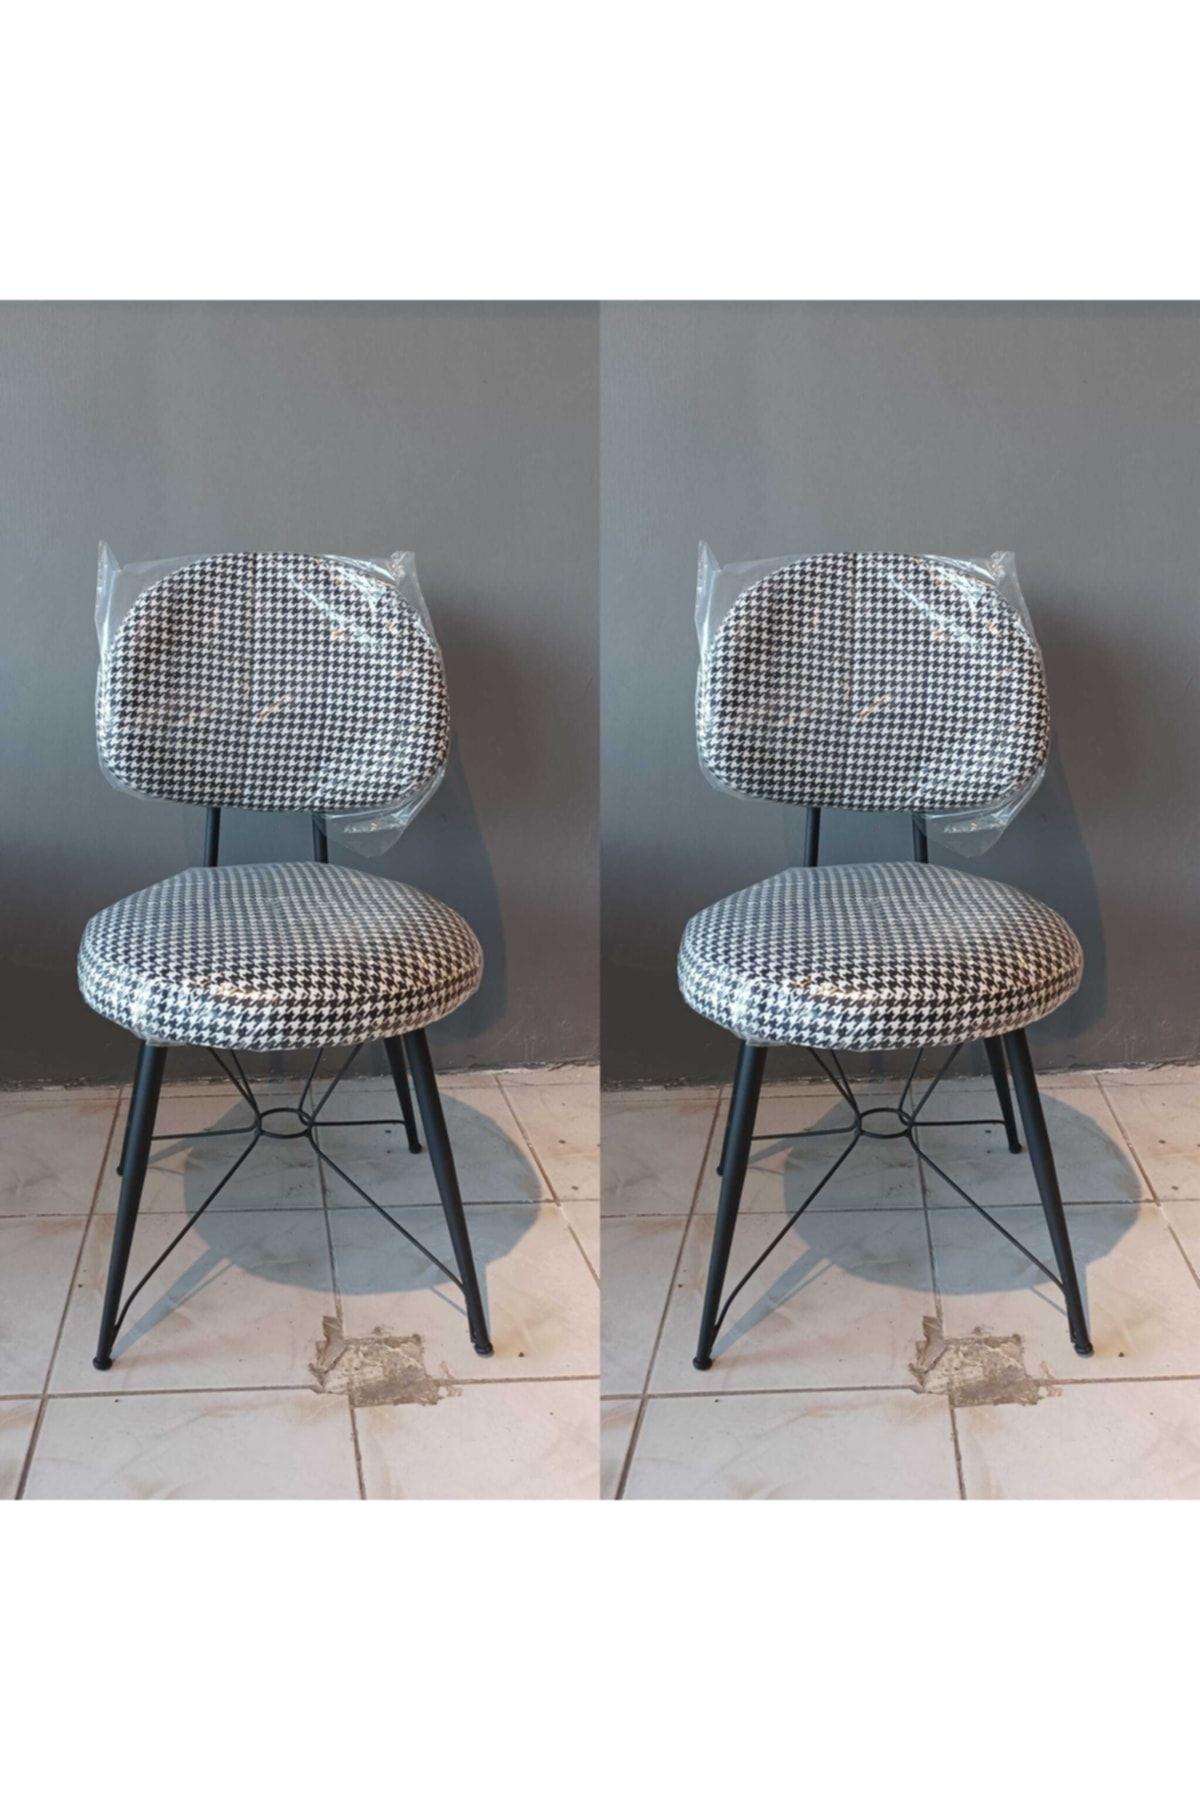 trendevim Dora Sandalye Salon Mutfak Sandalyesi Cafe Sandalye Retro Sandalye 2 Adet Fiyatıdır